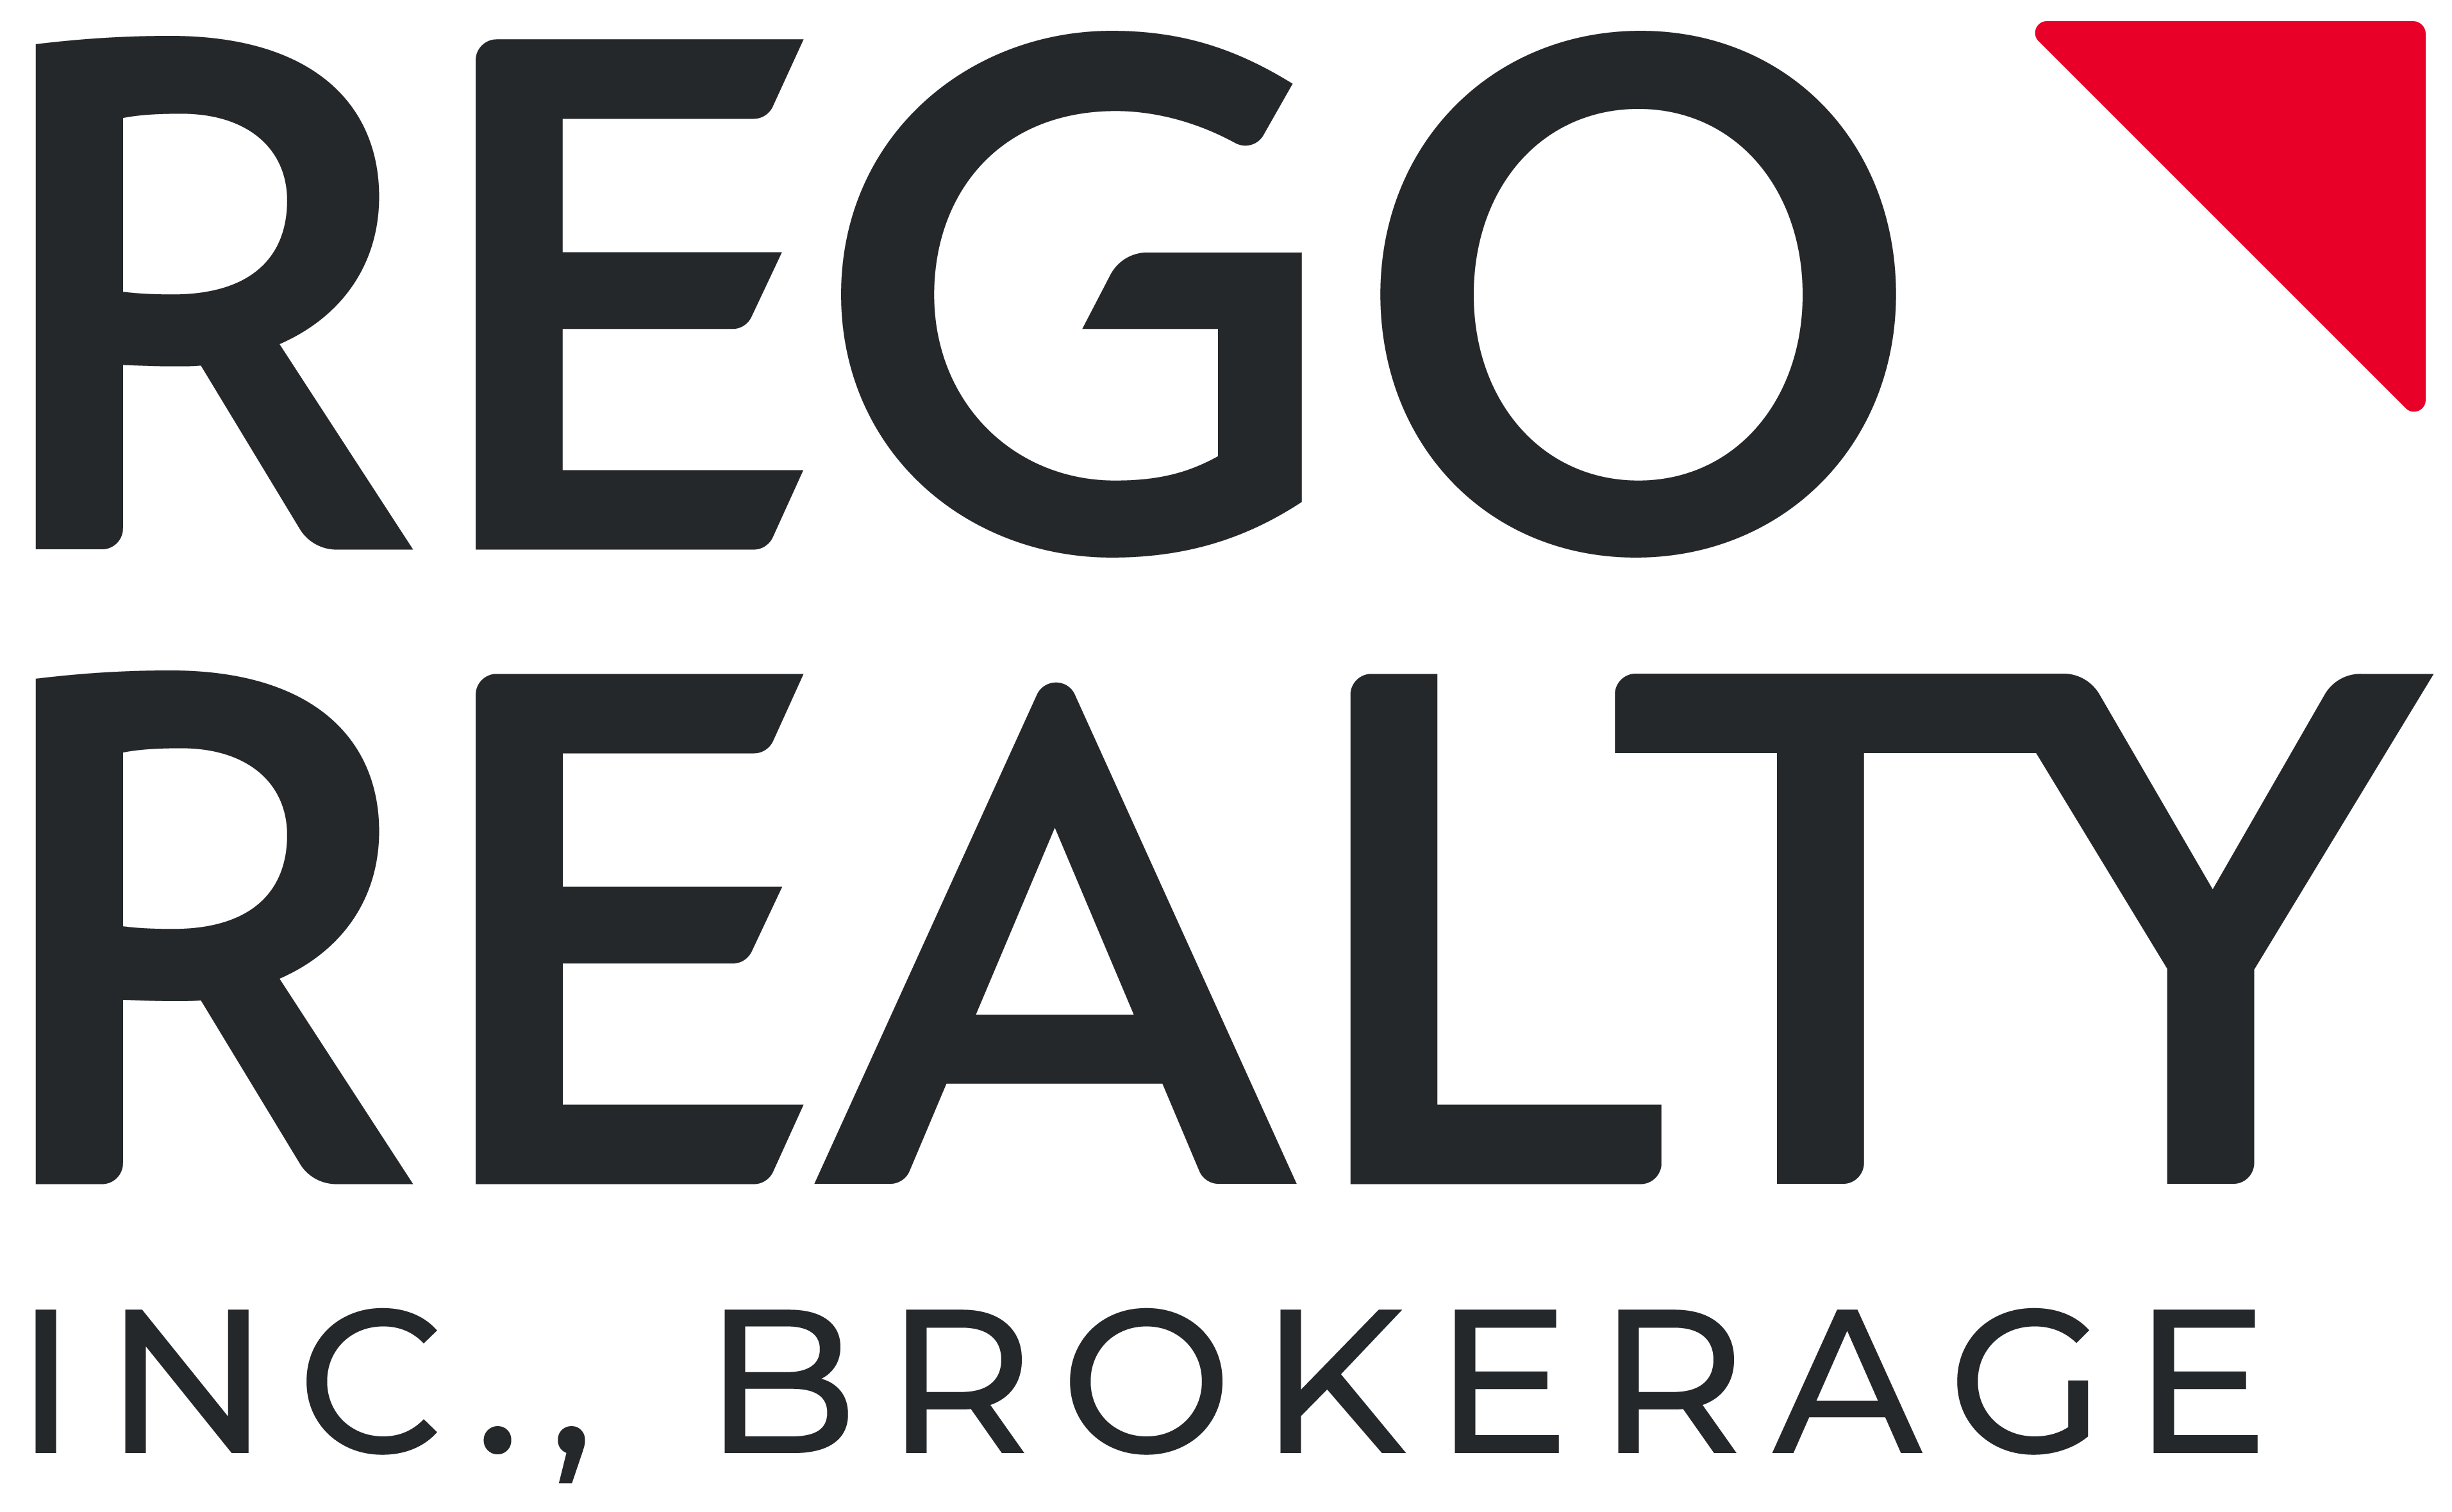 Rego realty including brokerage